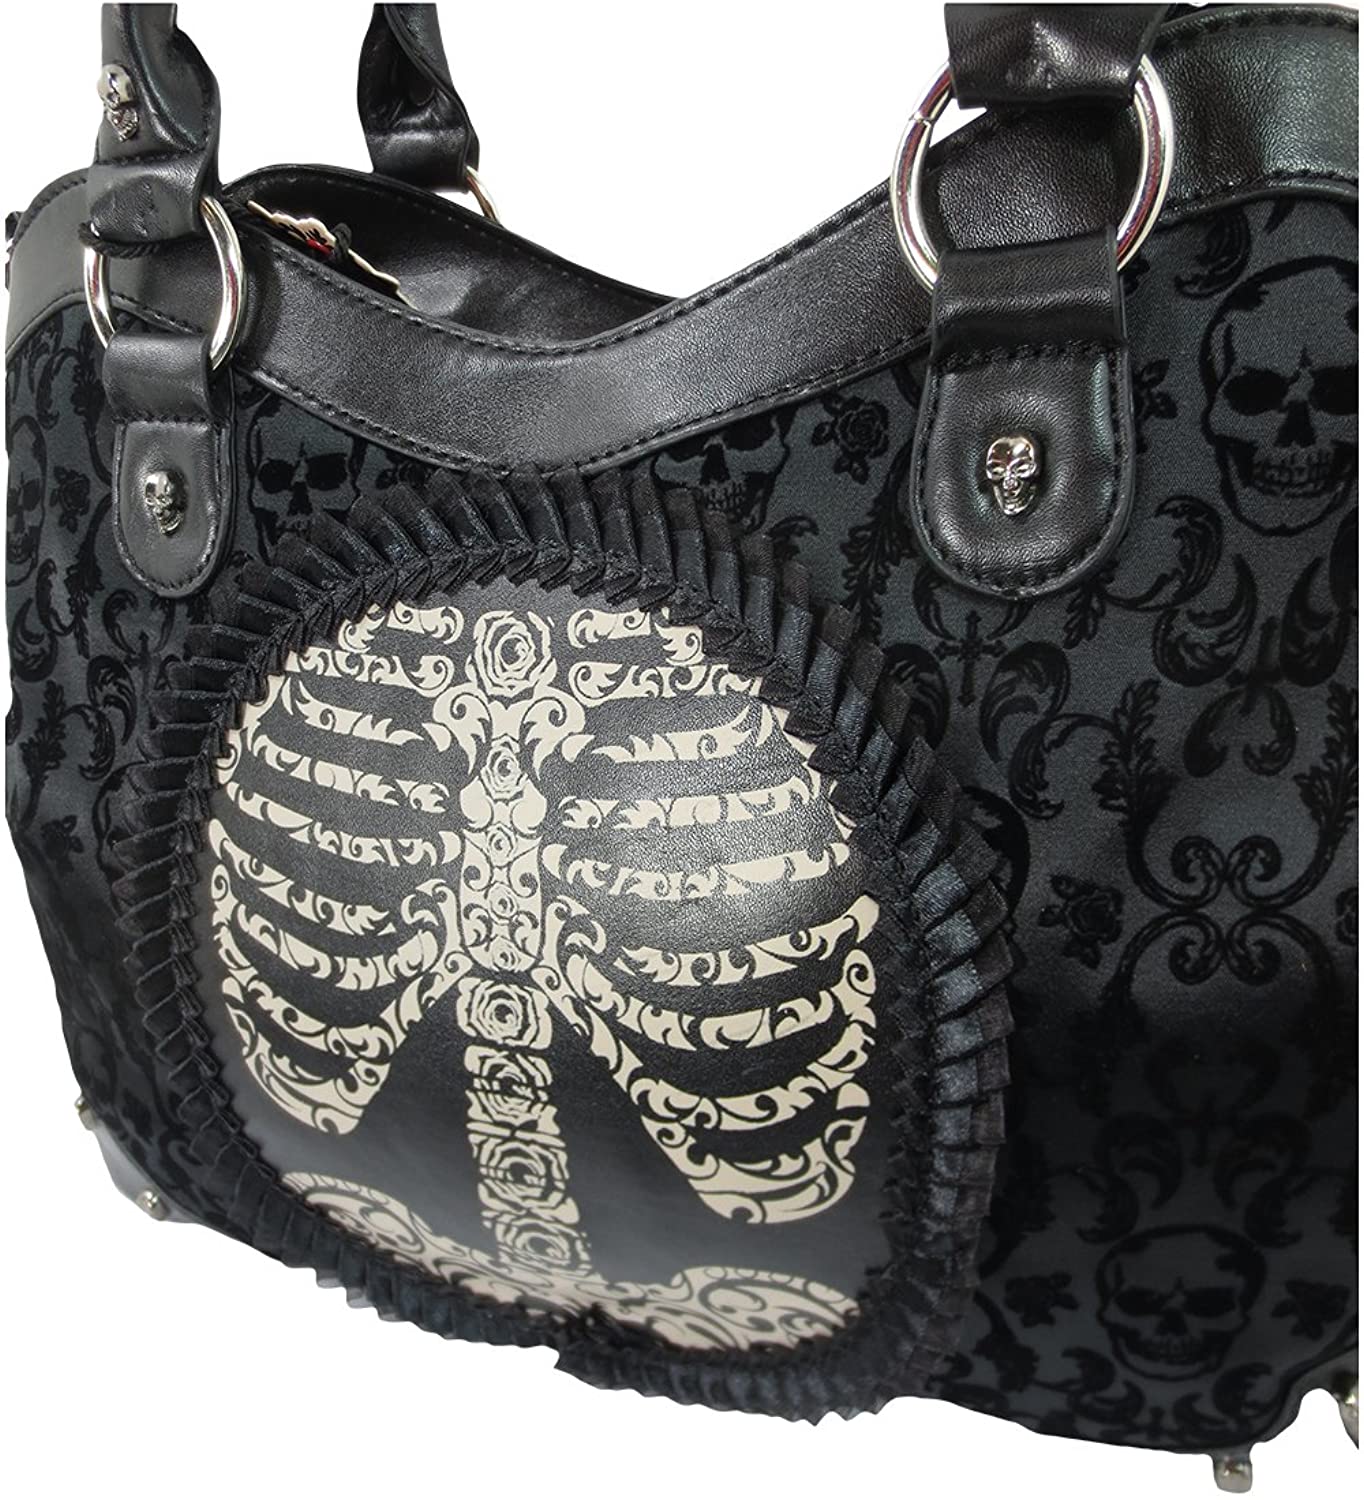 Lost Queen Black Goth Steampunk Flocked Ribcage Skeleton Cameo Handbag Shoulder Bag, Large